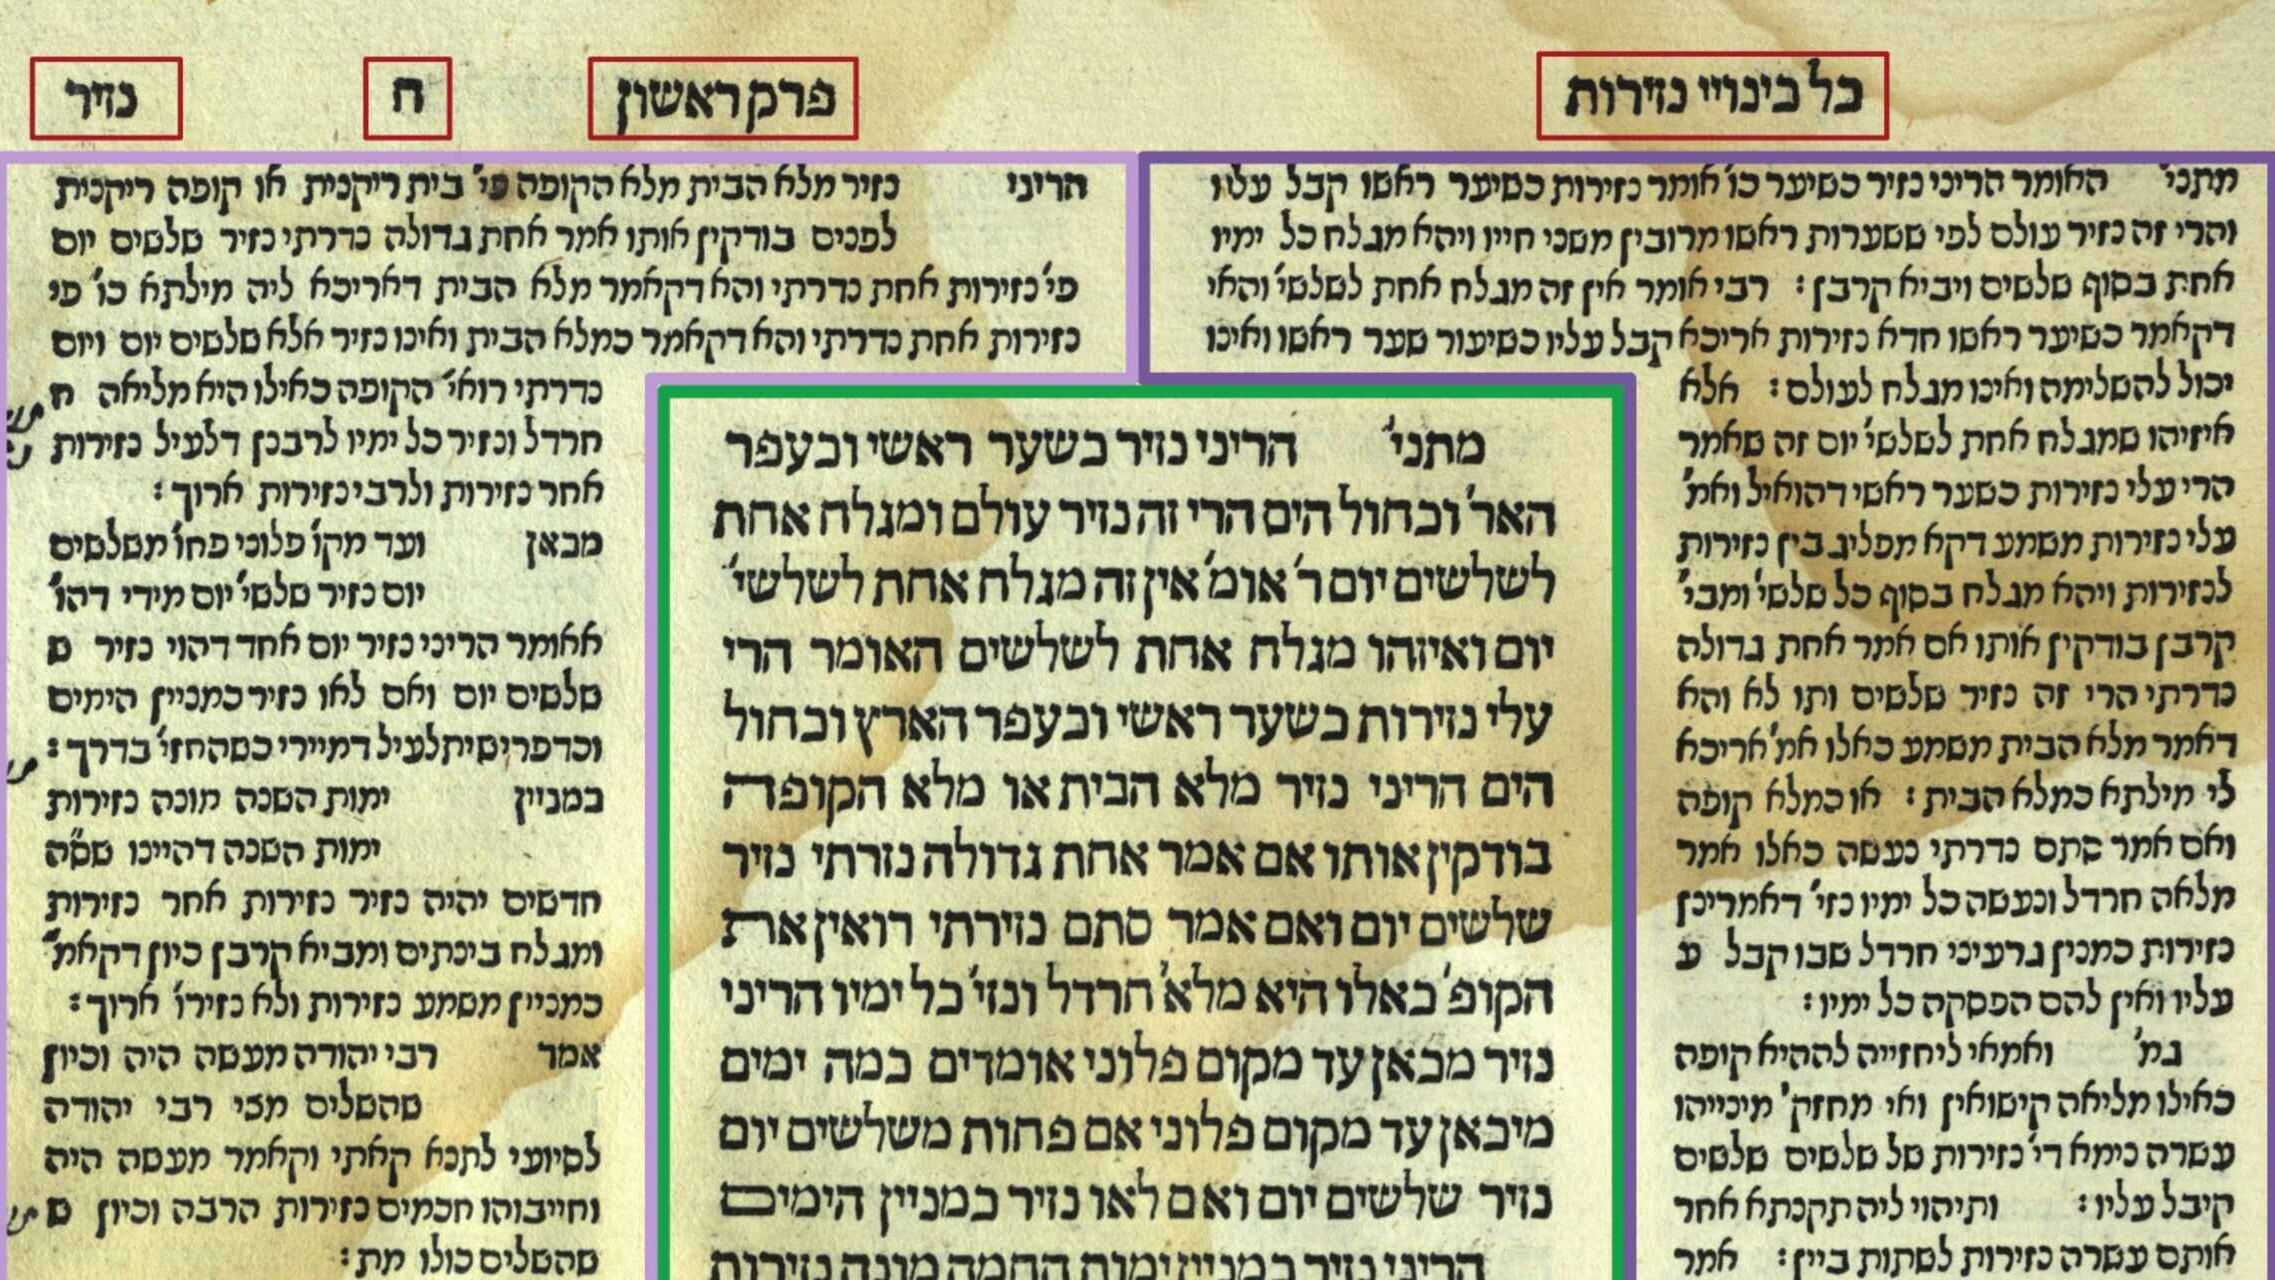 Attēls no ebreju Talmuda ar komentāriem malās